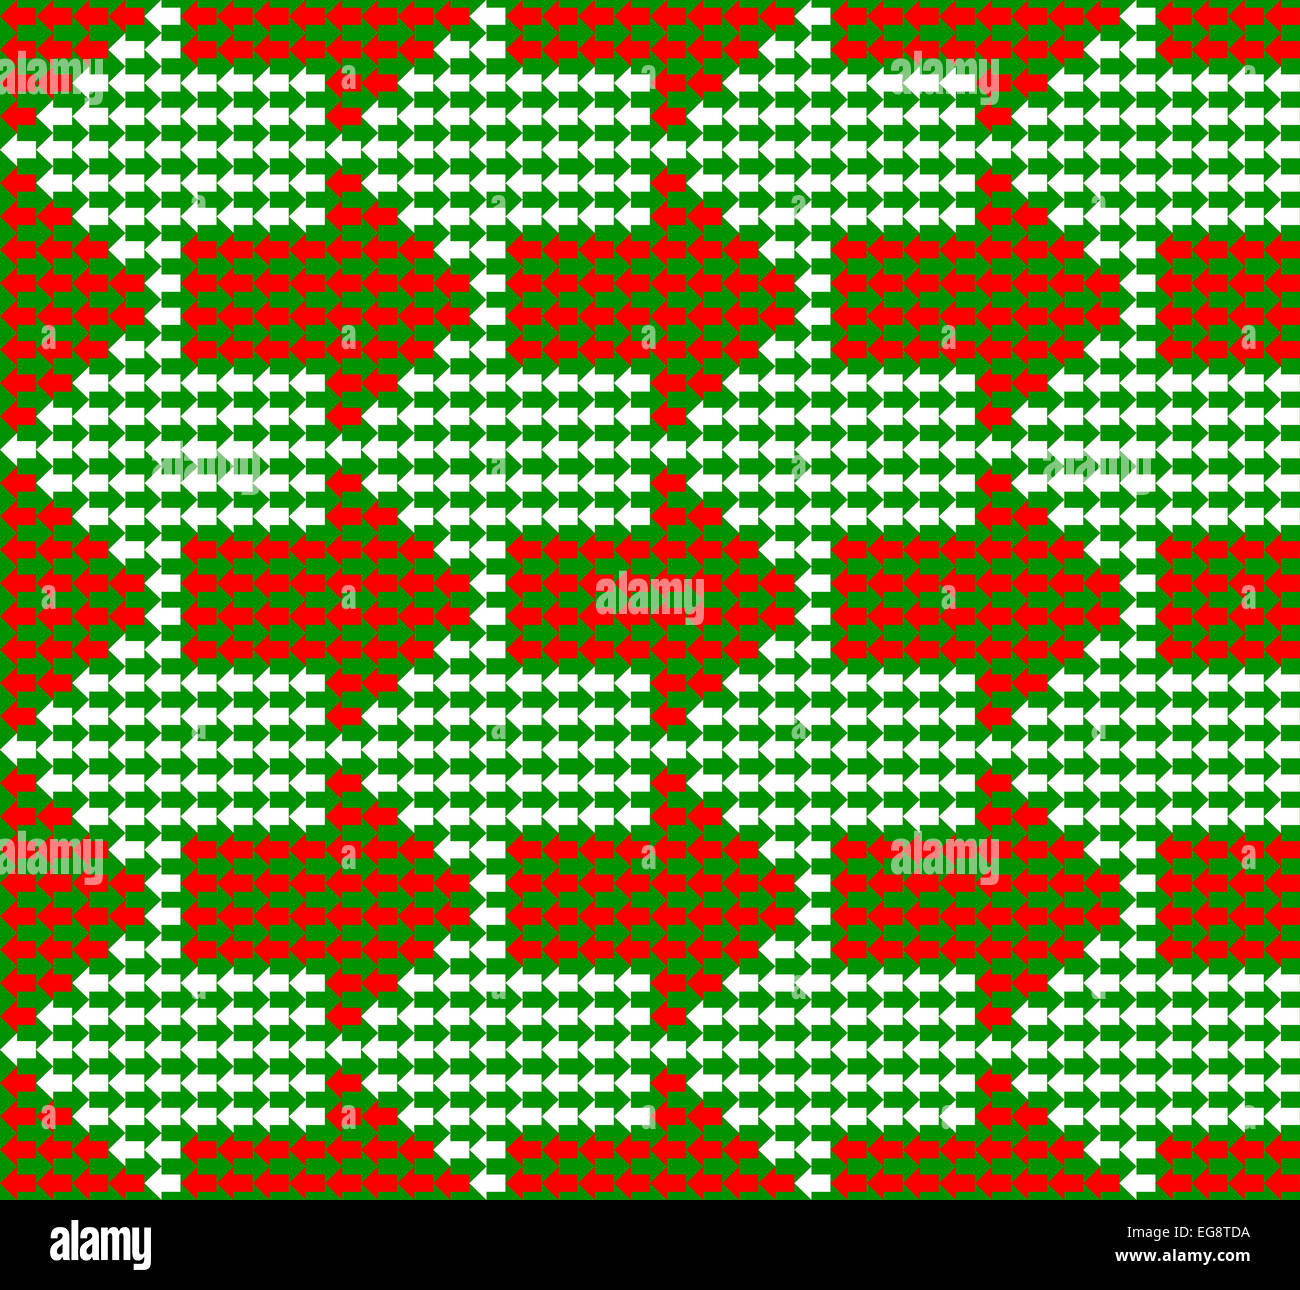 Grüne, weiße und rote Pfeile zeigen in entgegengesetzte Richtungen, mit kleinen, größeren, ein nahtloses Muster bilden Stockfoto